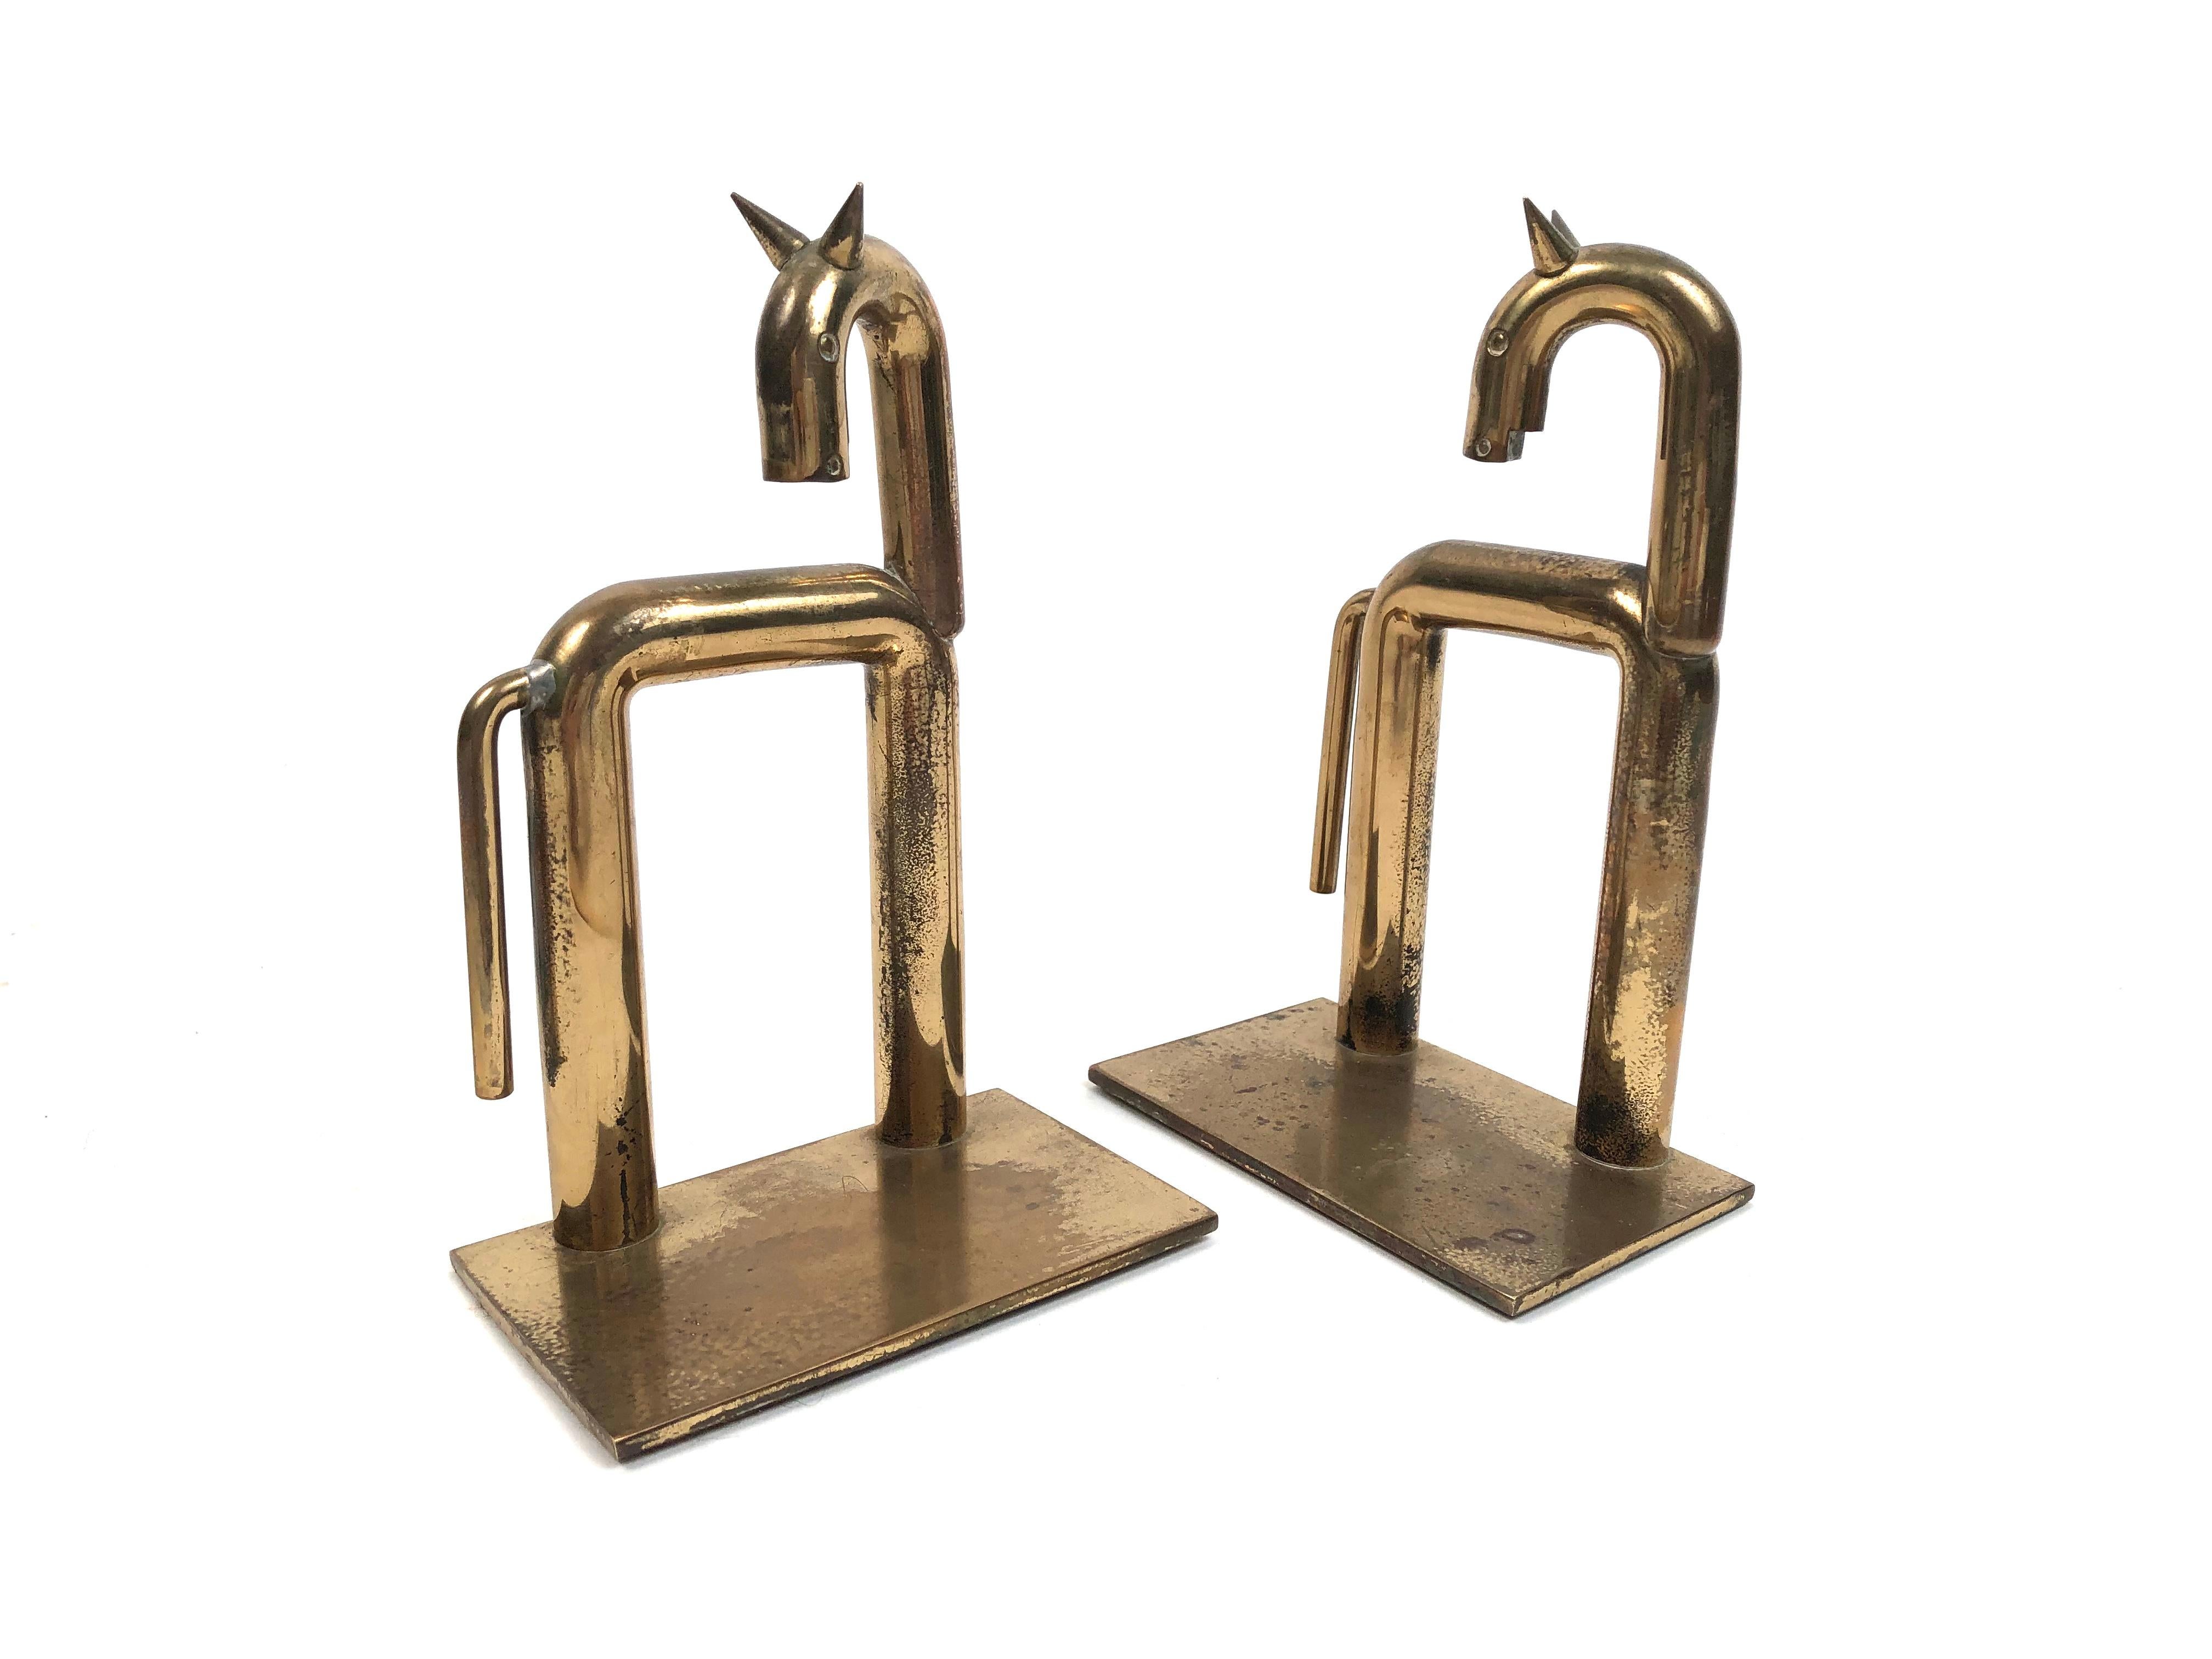 Cast Pair of Brass Modernist Horse Bookends Designed By Walter von Nessen, circa 1931